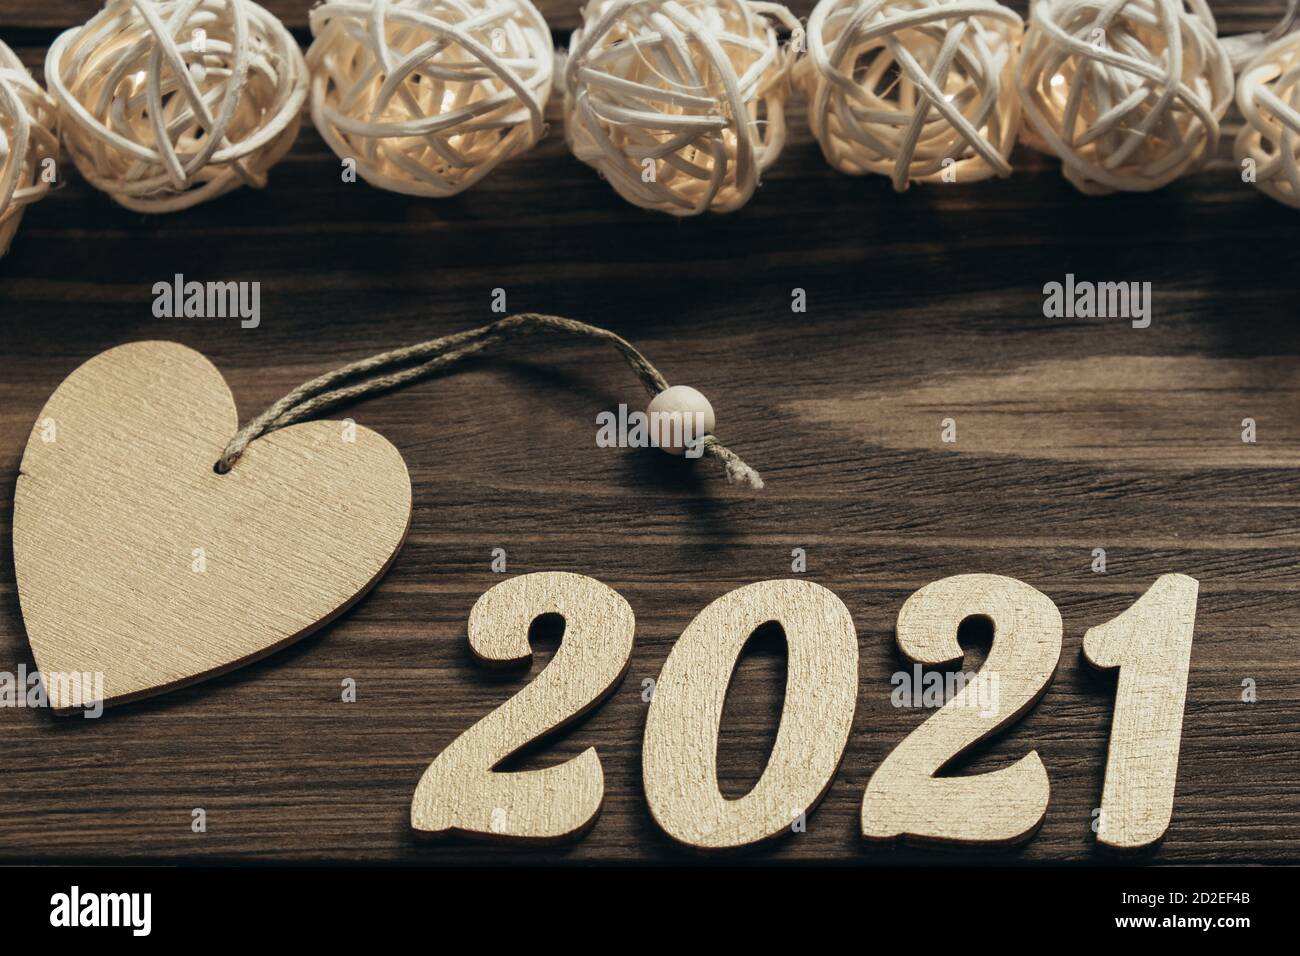 Nouvelle année 2021. Numéros dorés, décorations et guirlande lumineuse sur une table en bois sombre. Joyeux Noël et Bonne Année. Vue de dessus. Gros plan. Banque D'Images